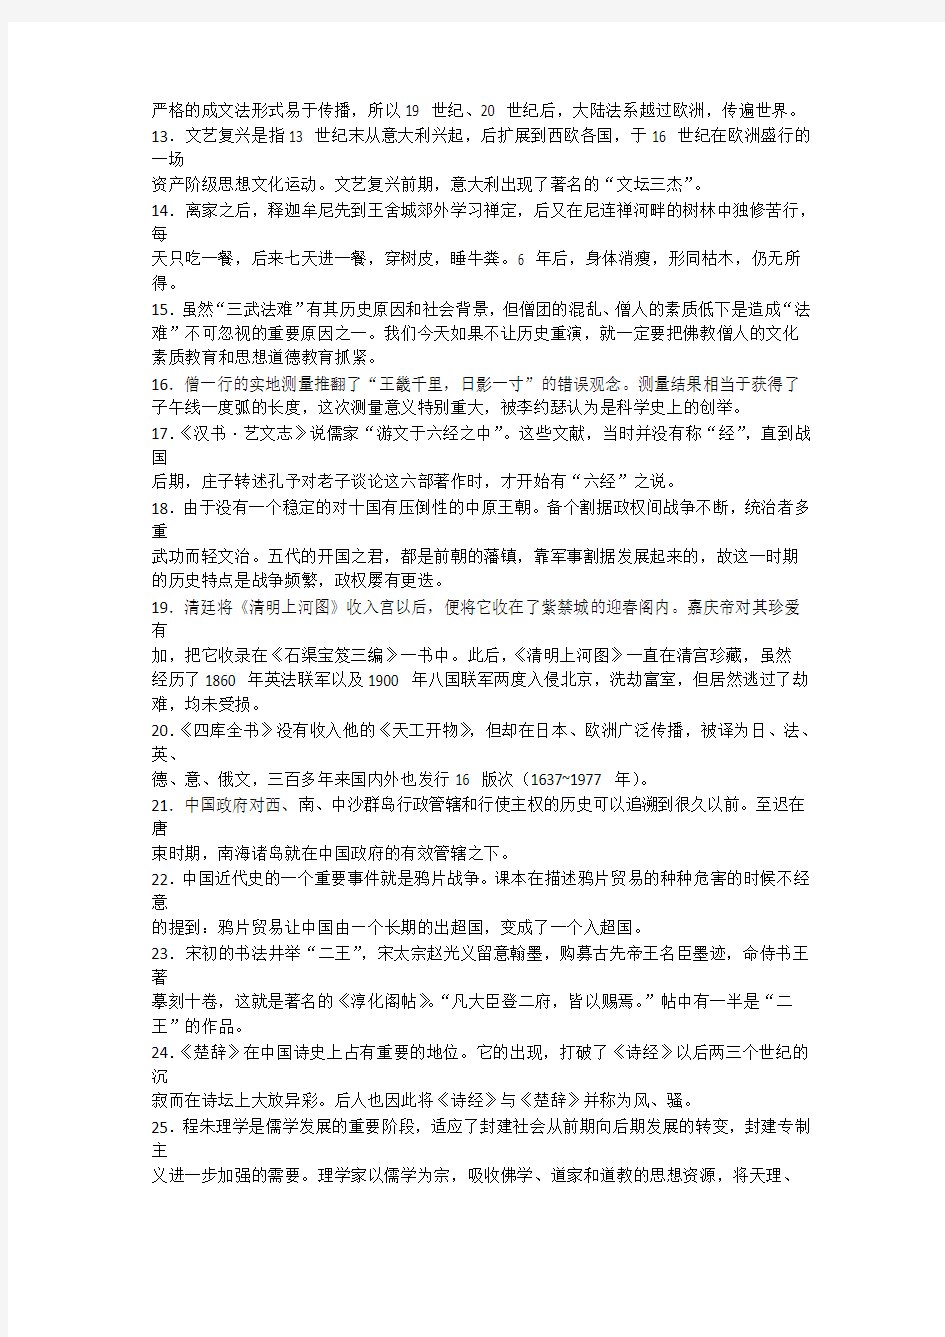 汉语写作与百科知识 考研真题汇总